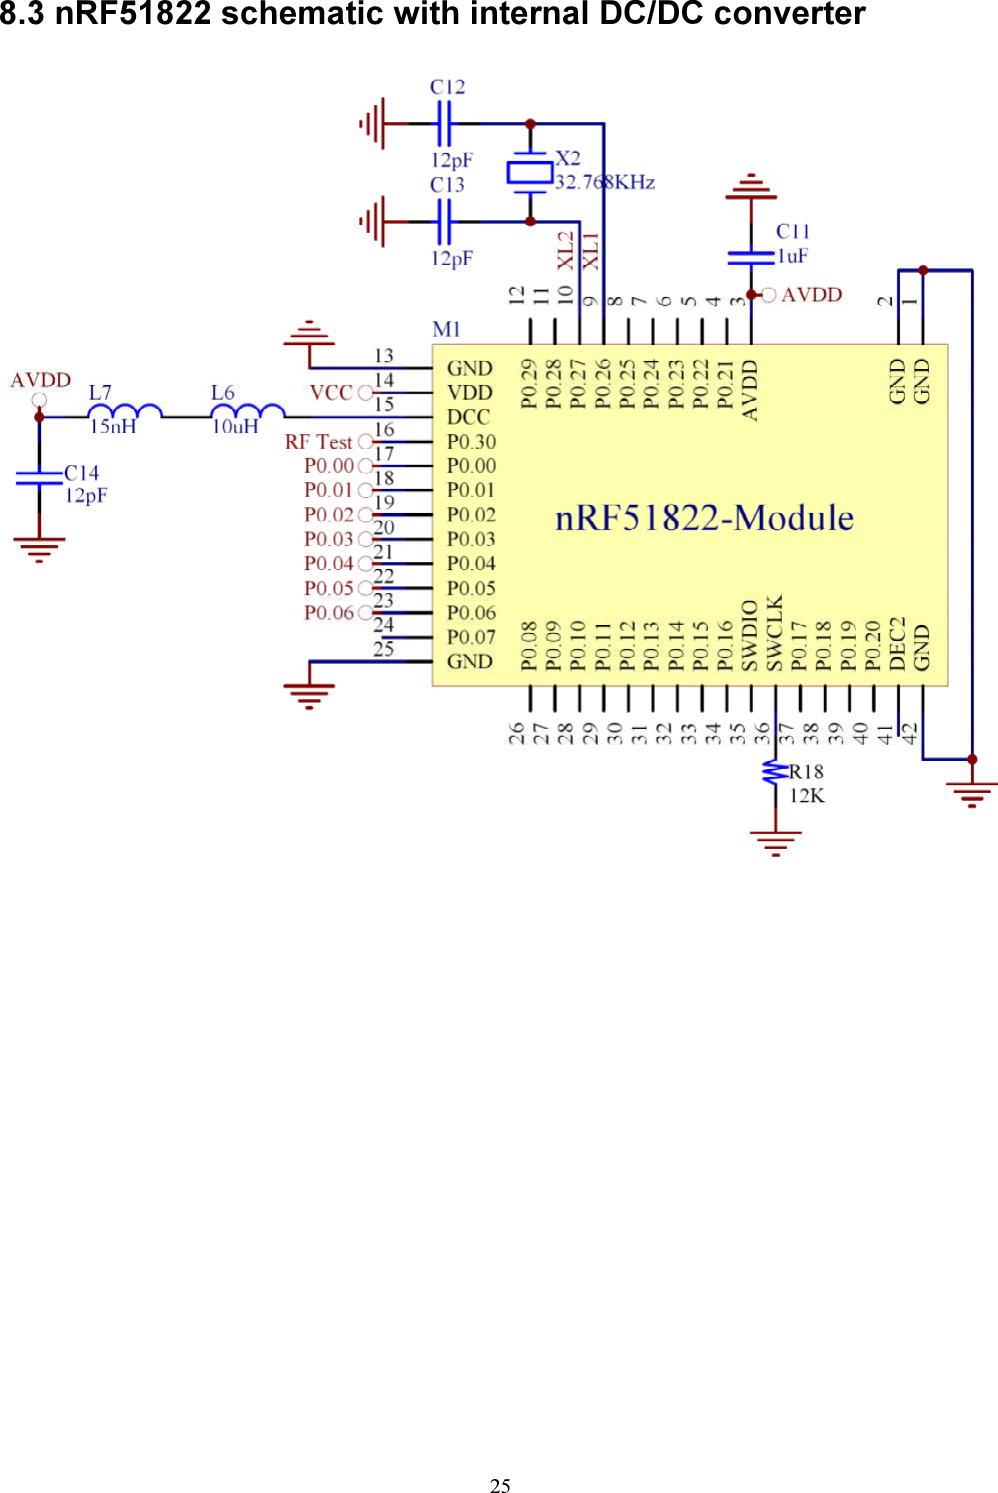 25  8.3 nRF51822 schematic with internal DC/DC converter               